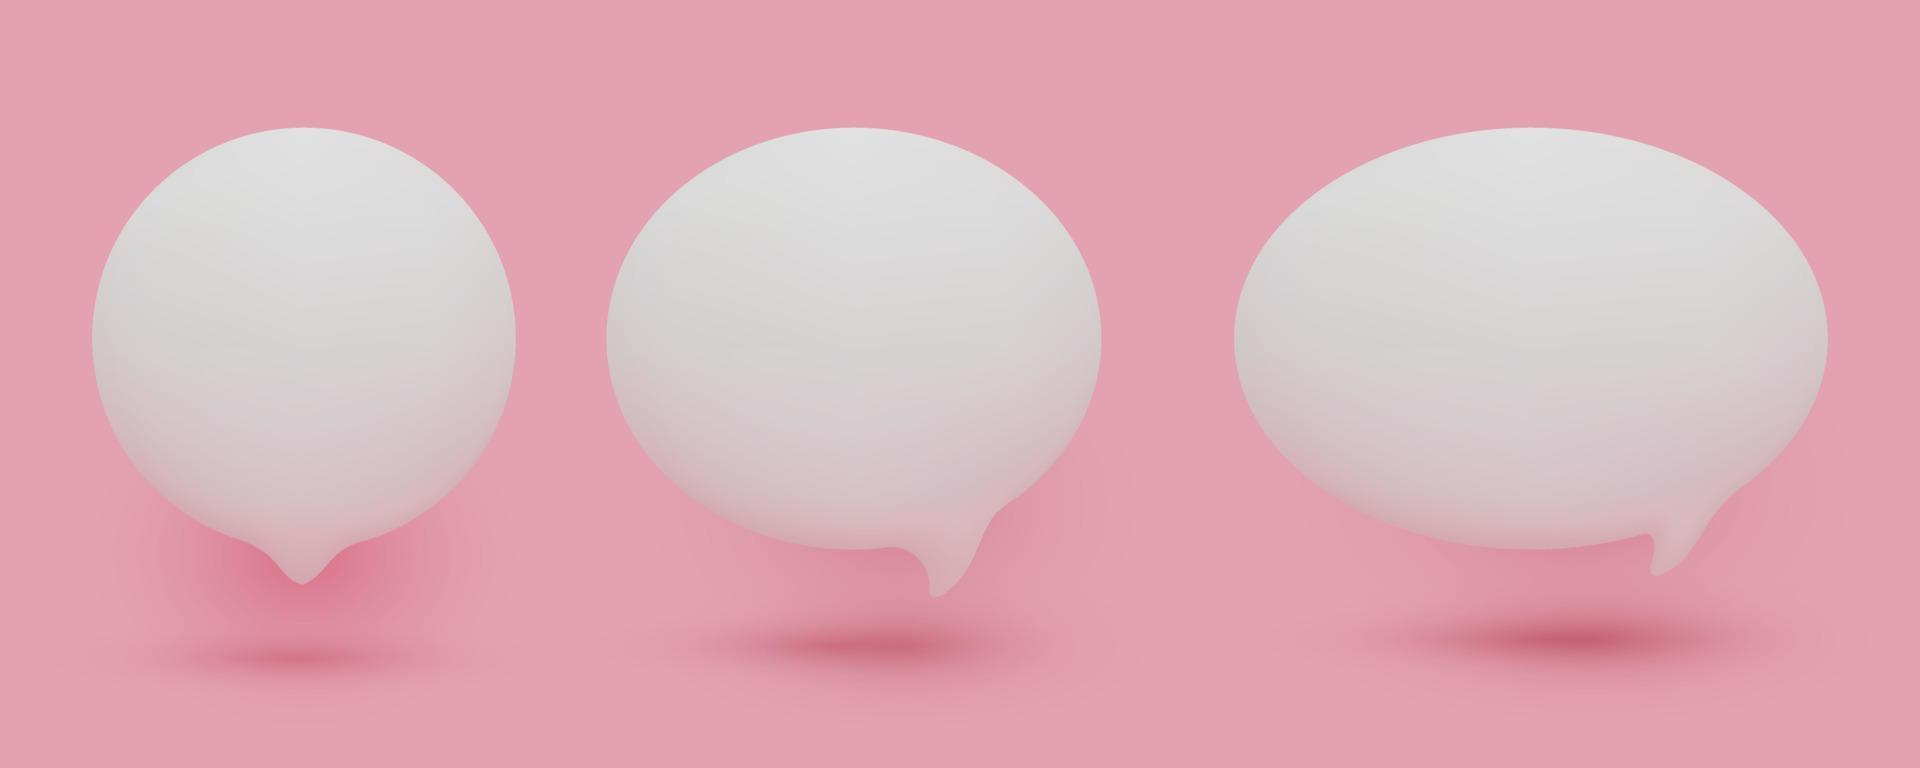 Satz von 3D-niedlichen weißen Sprechblasensymbolen, isoliert auf rosa Pastellhintergrund. Vektor-Mesh-3D-Chat-Icon-Set vektor